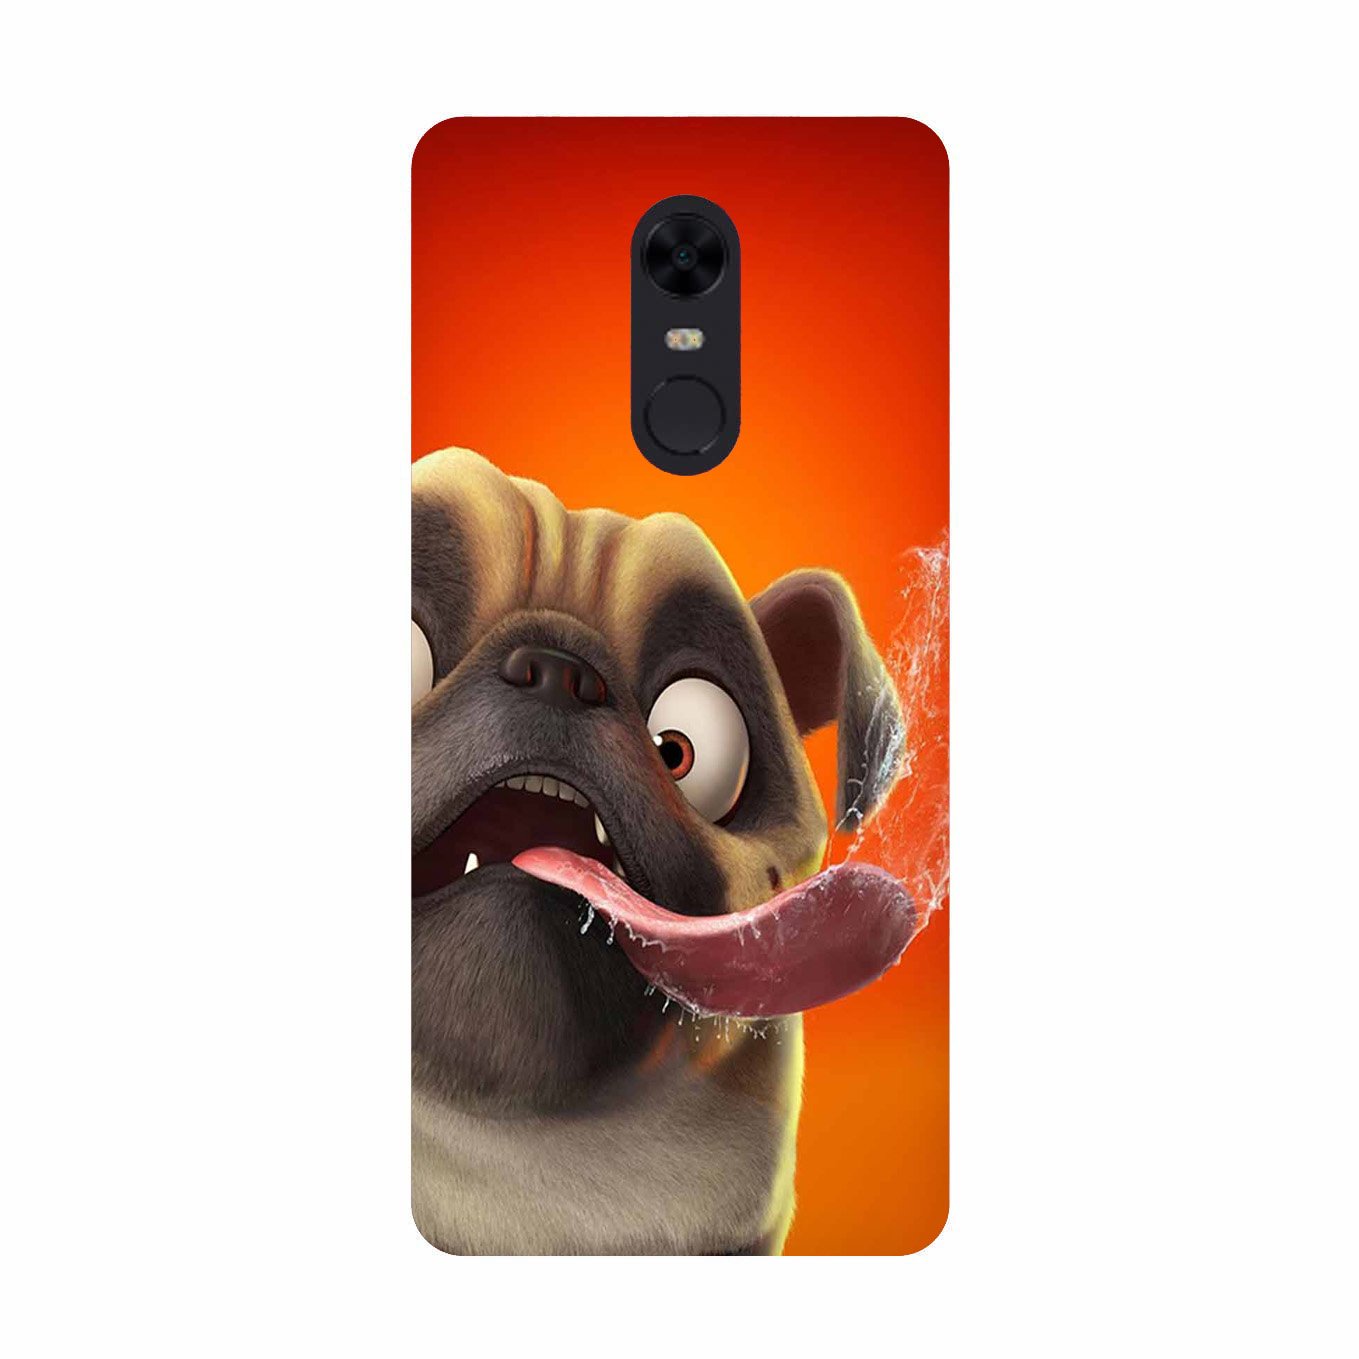 Dog Mobile Back Case for Redmi Note 4(Design - 343)